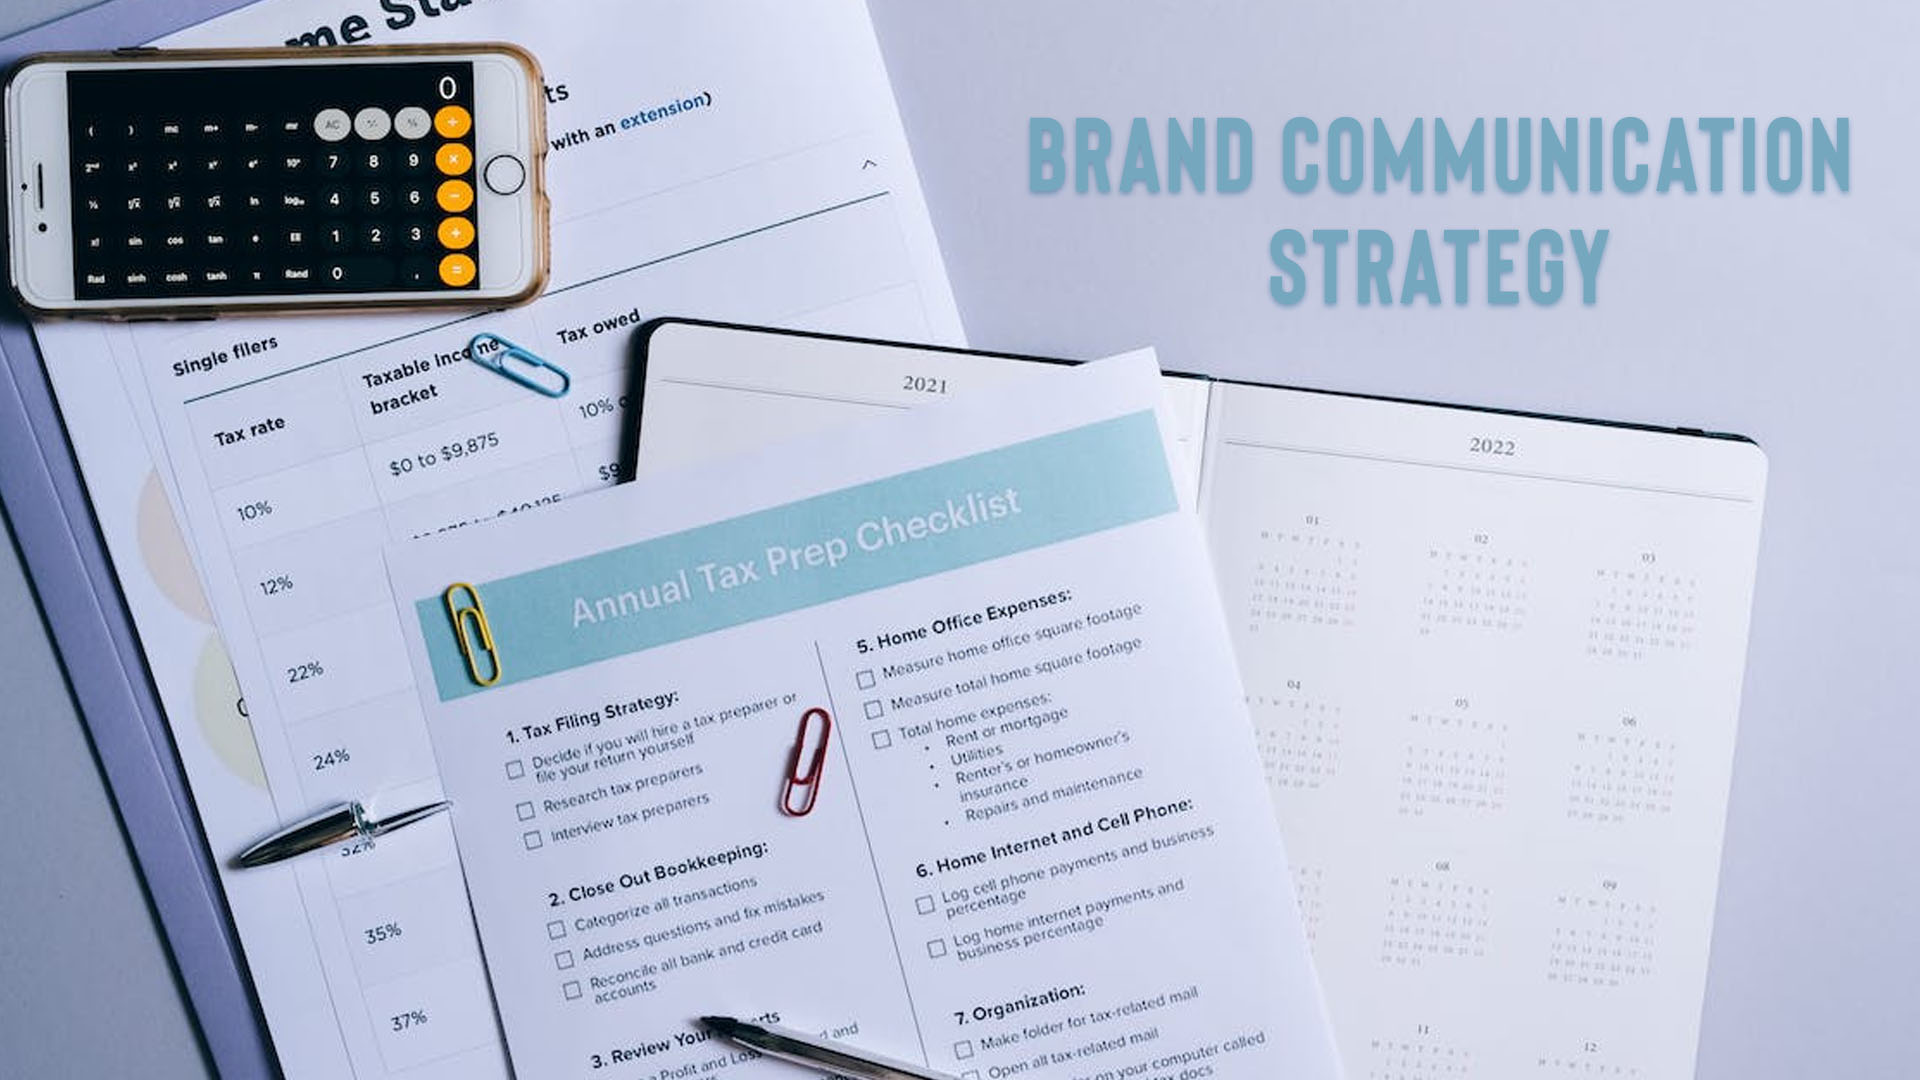 Brand Communication Strategy 2023